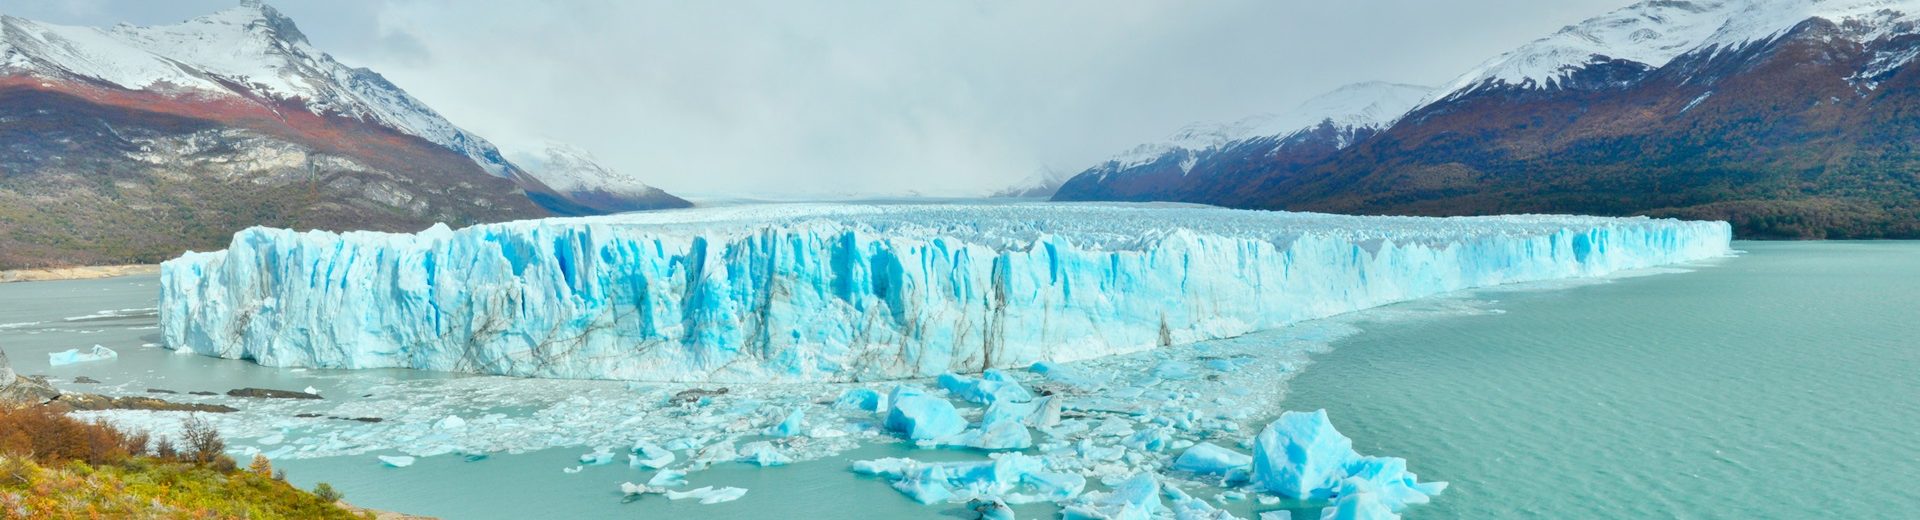 Onde fica a Patagônia? Chile e argentina preservam uma beleza quase intocada